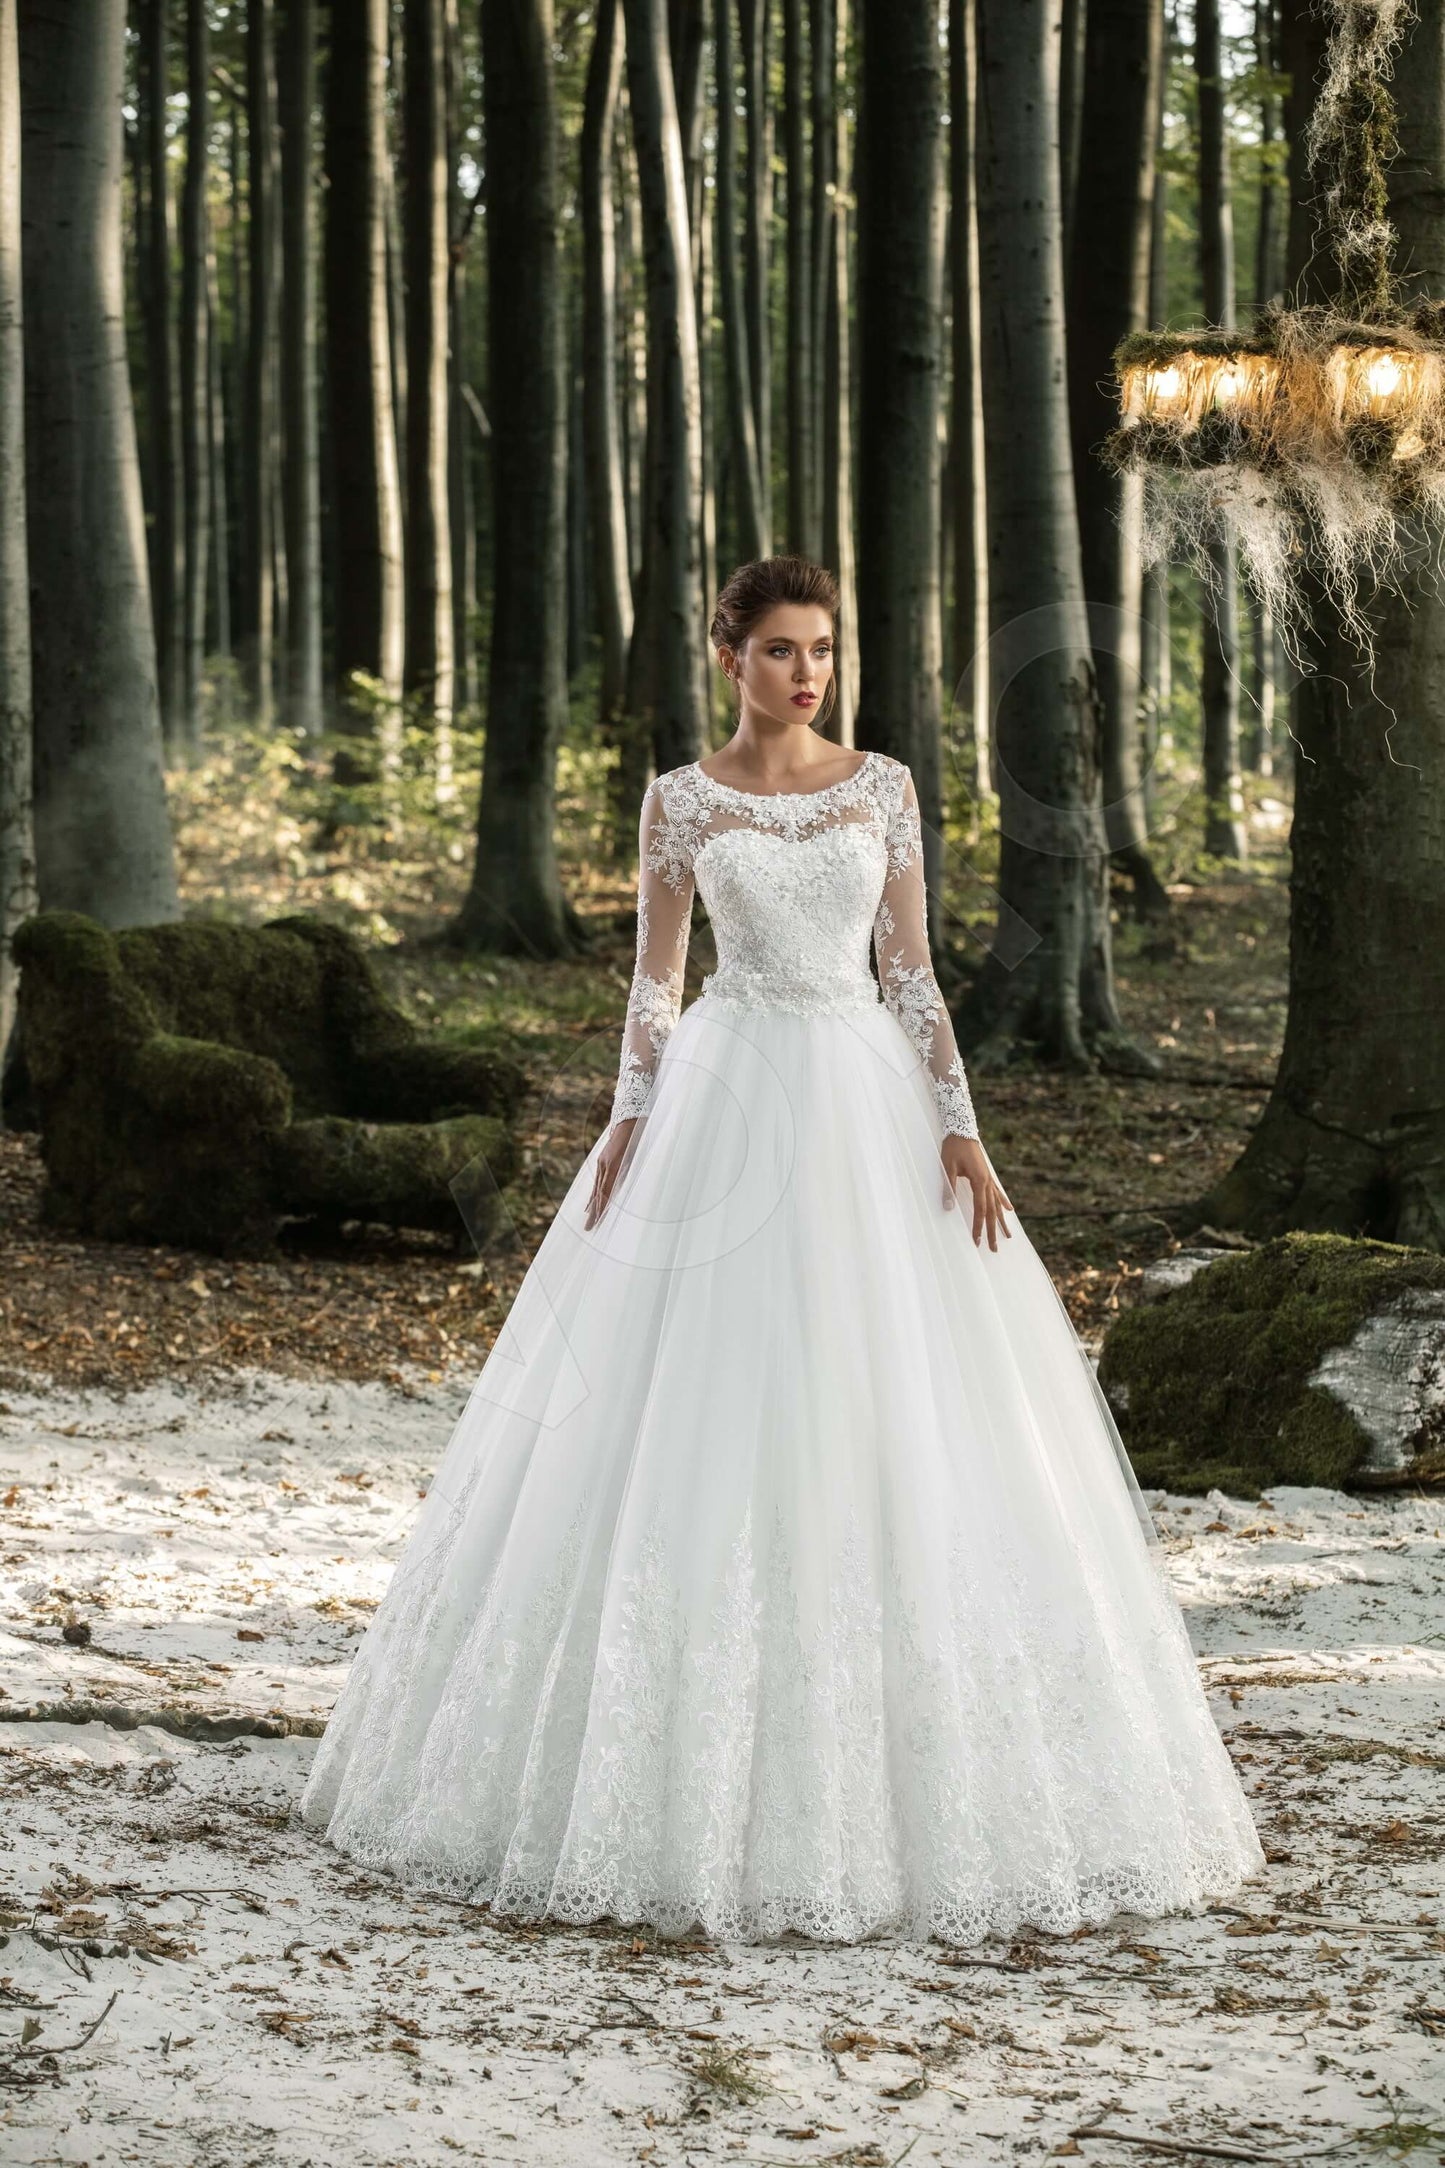 Octavia Open back Princess/Ball Gown Long sleeve Wedding Dress 2